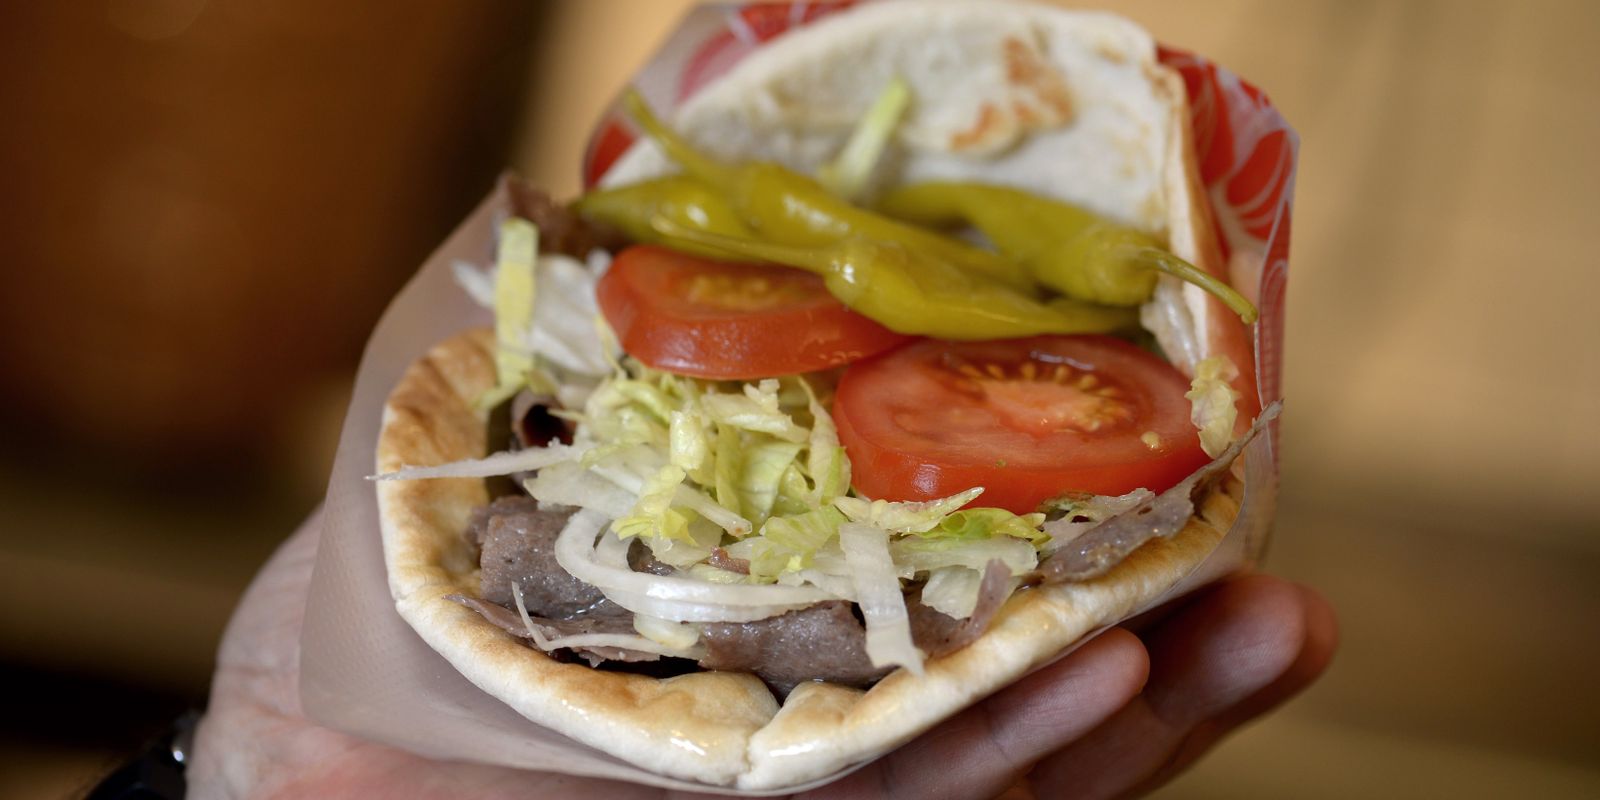 turkiet vill skydda kebab: ”otänkbart med sås”